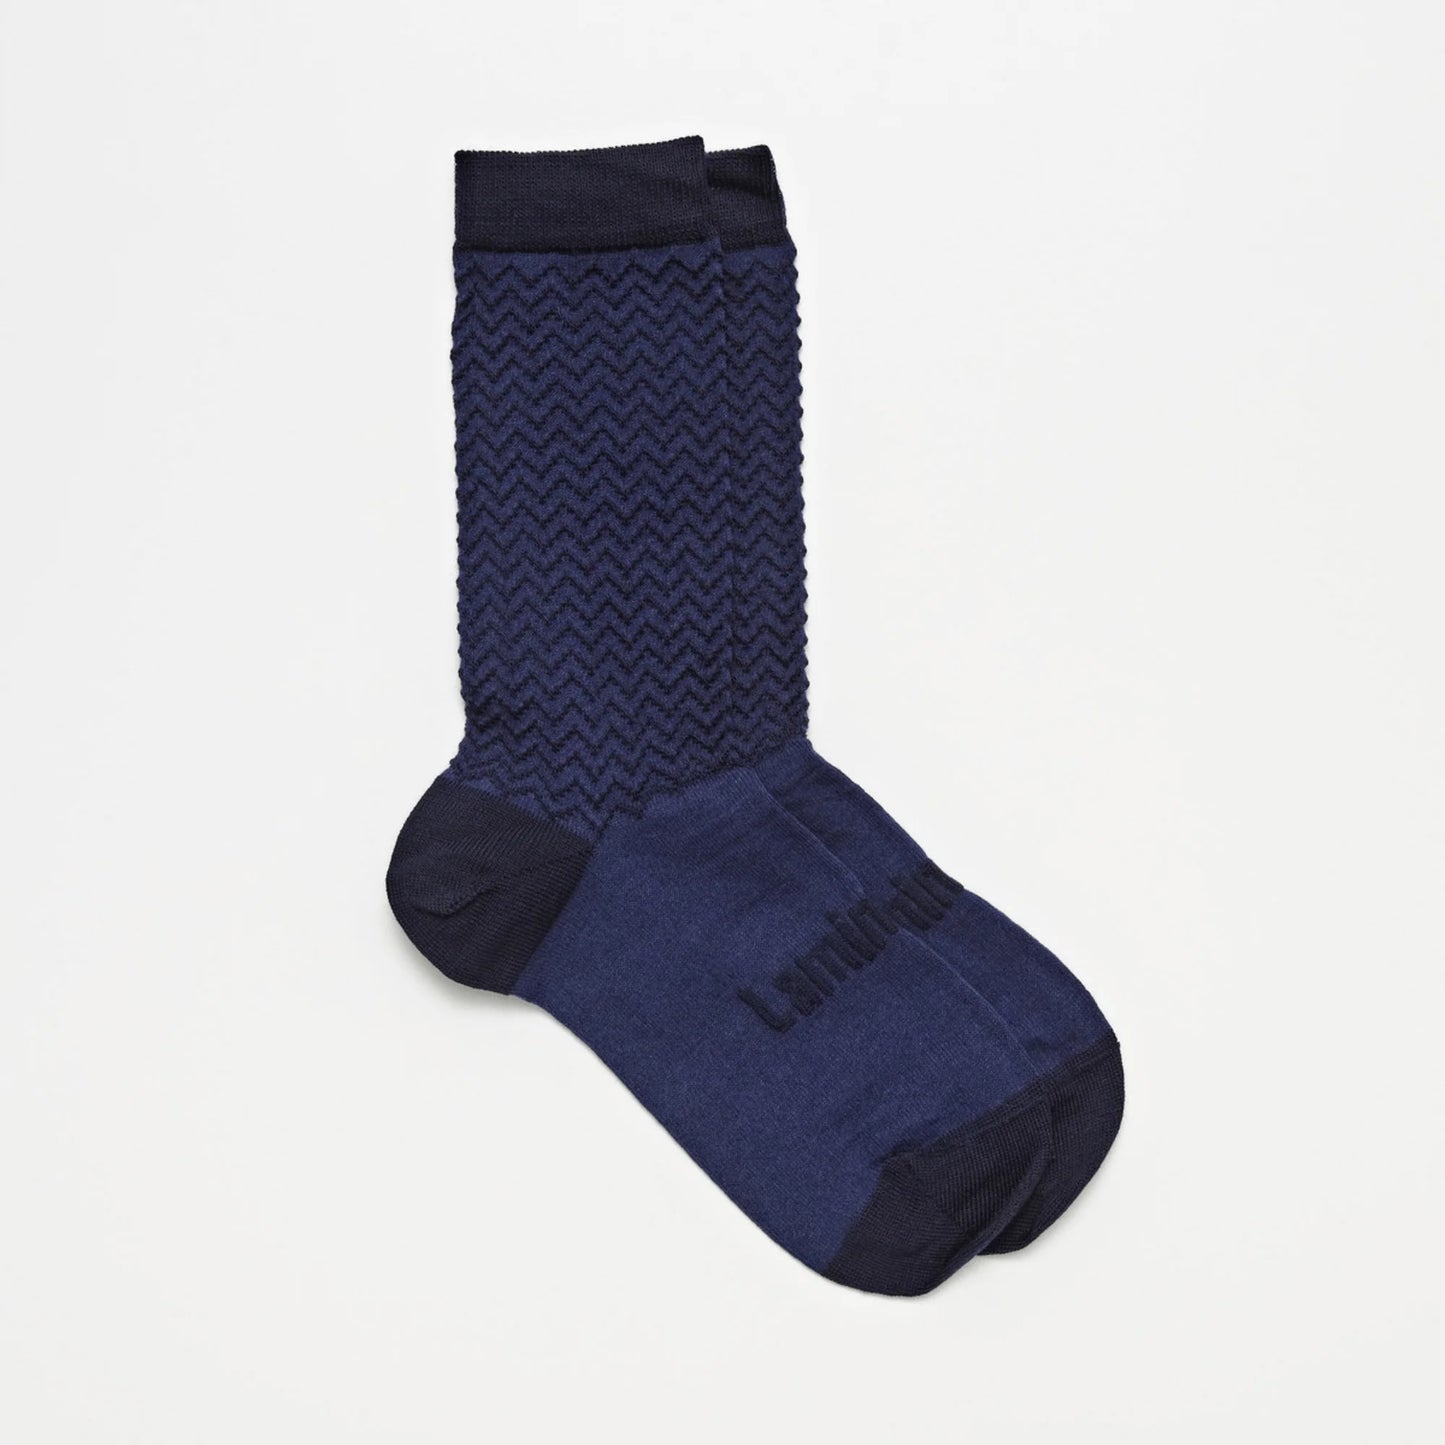 Lamington Crew Socks / Nimbus / Unisex